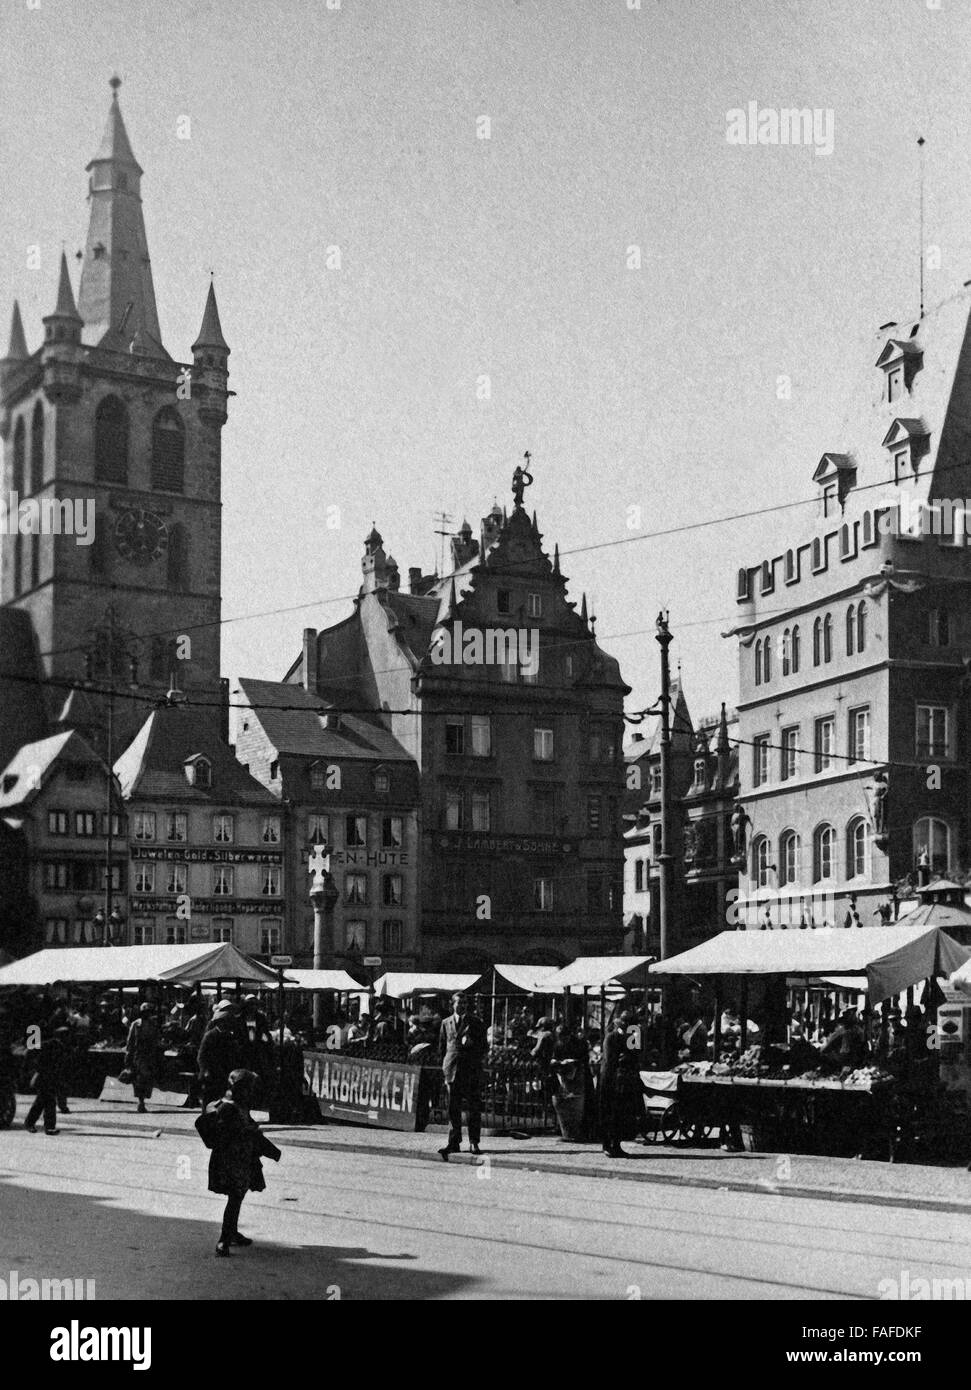 Blick auf die Kirche San Gangolf und den Marktplatz in der Innenstadt von Trier Deutschland 1930er Jahre. Vista di San Gangolf la chiesa e il mercato principale a Treviri, Germania 1930s. Foto Stock